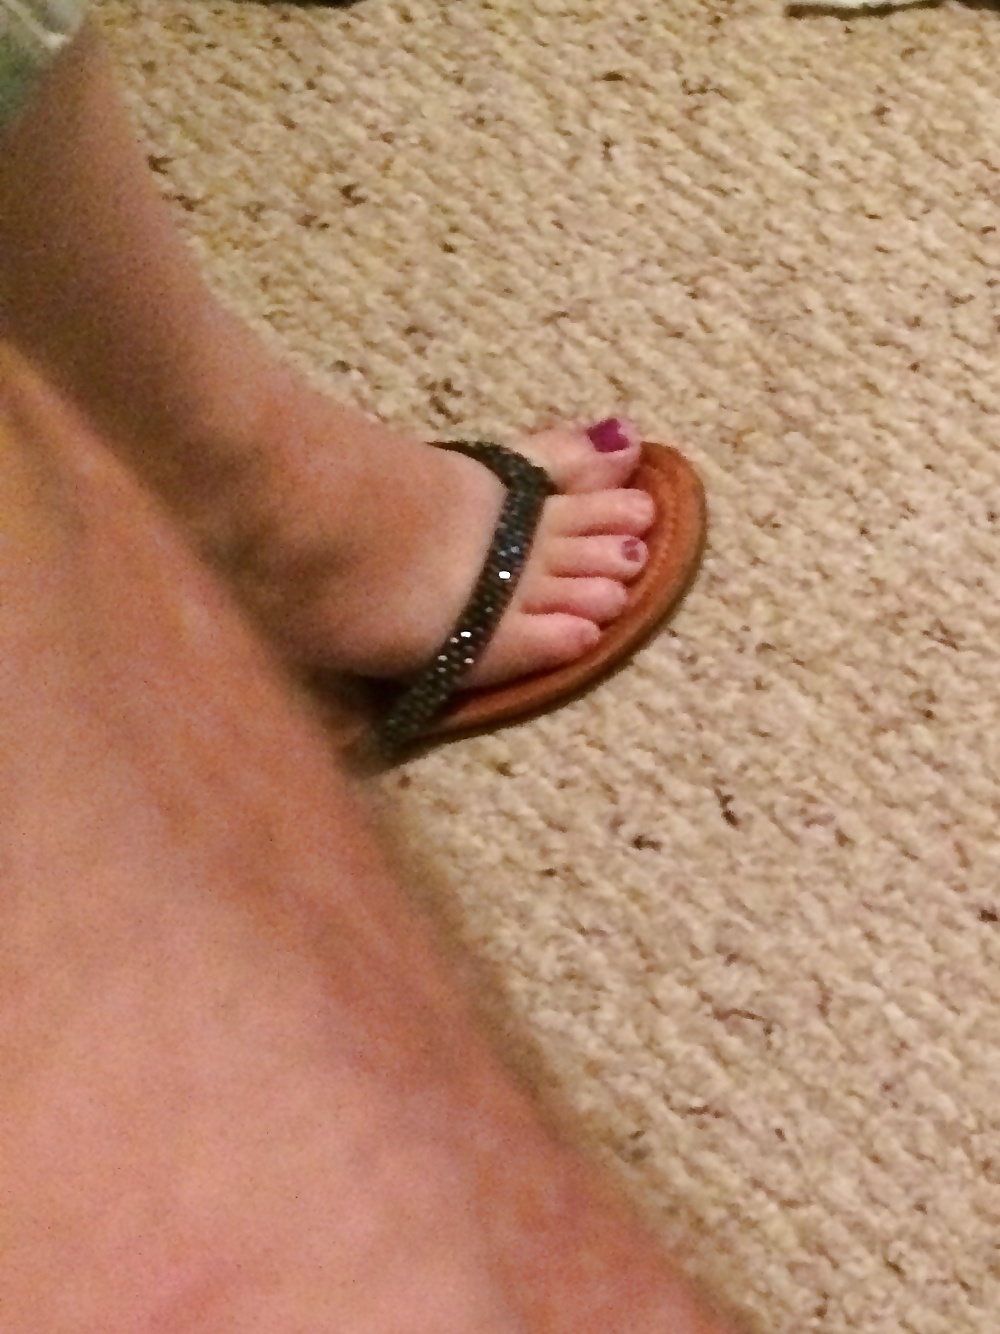 Wife's cute feet before work!